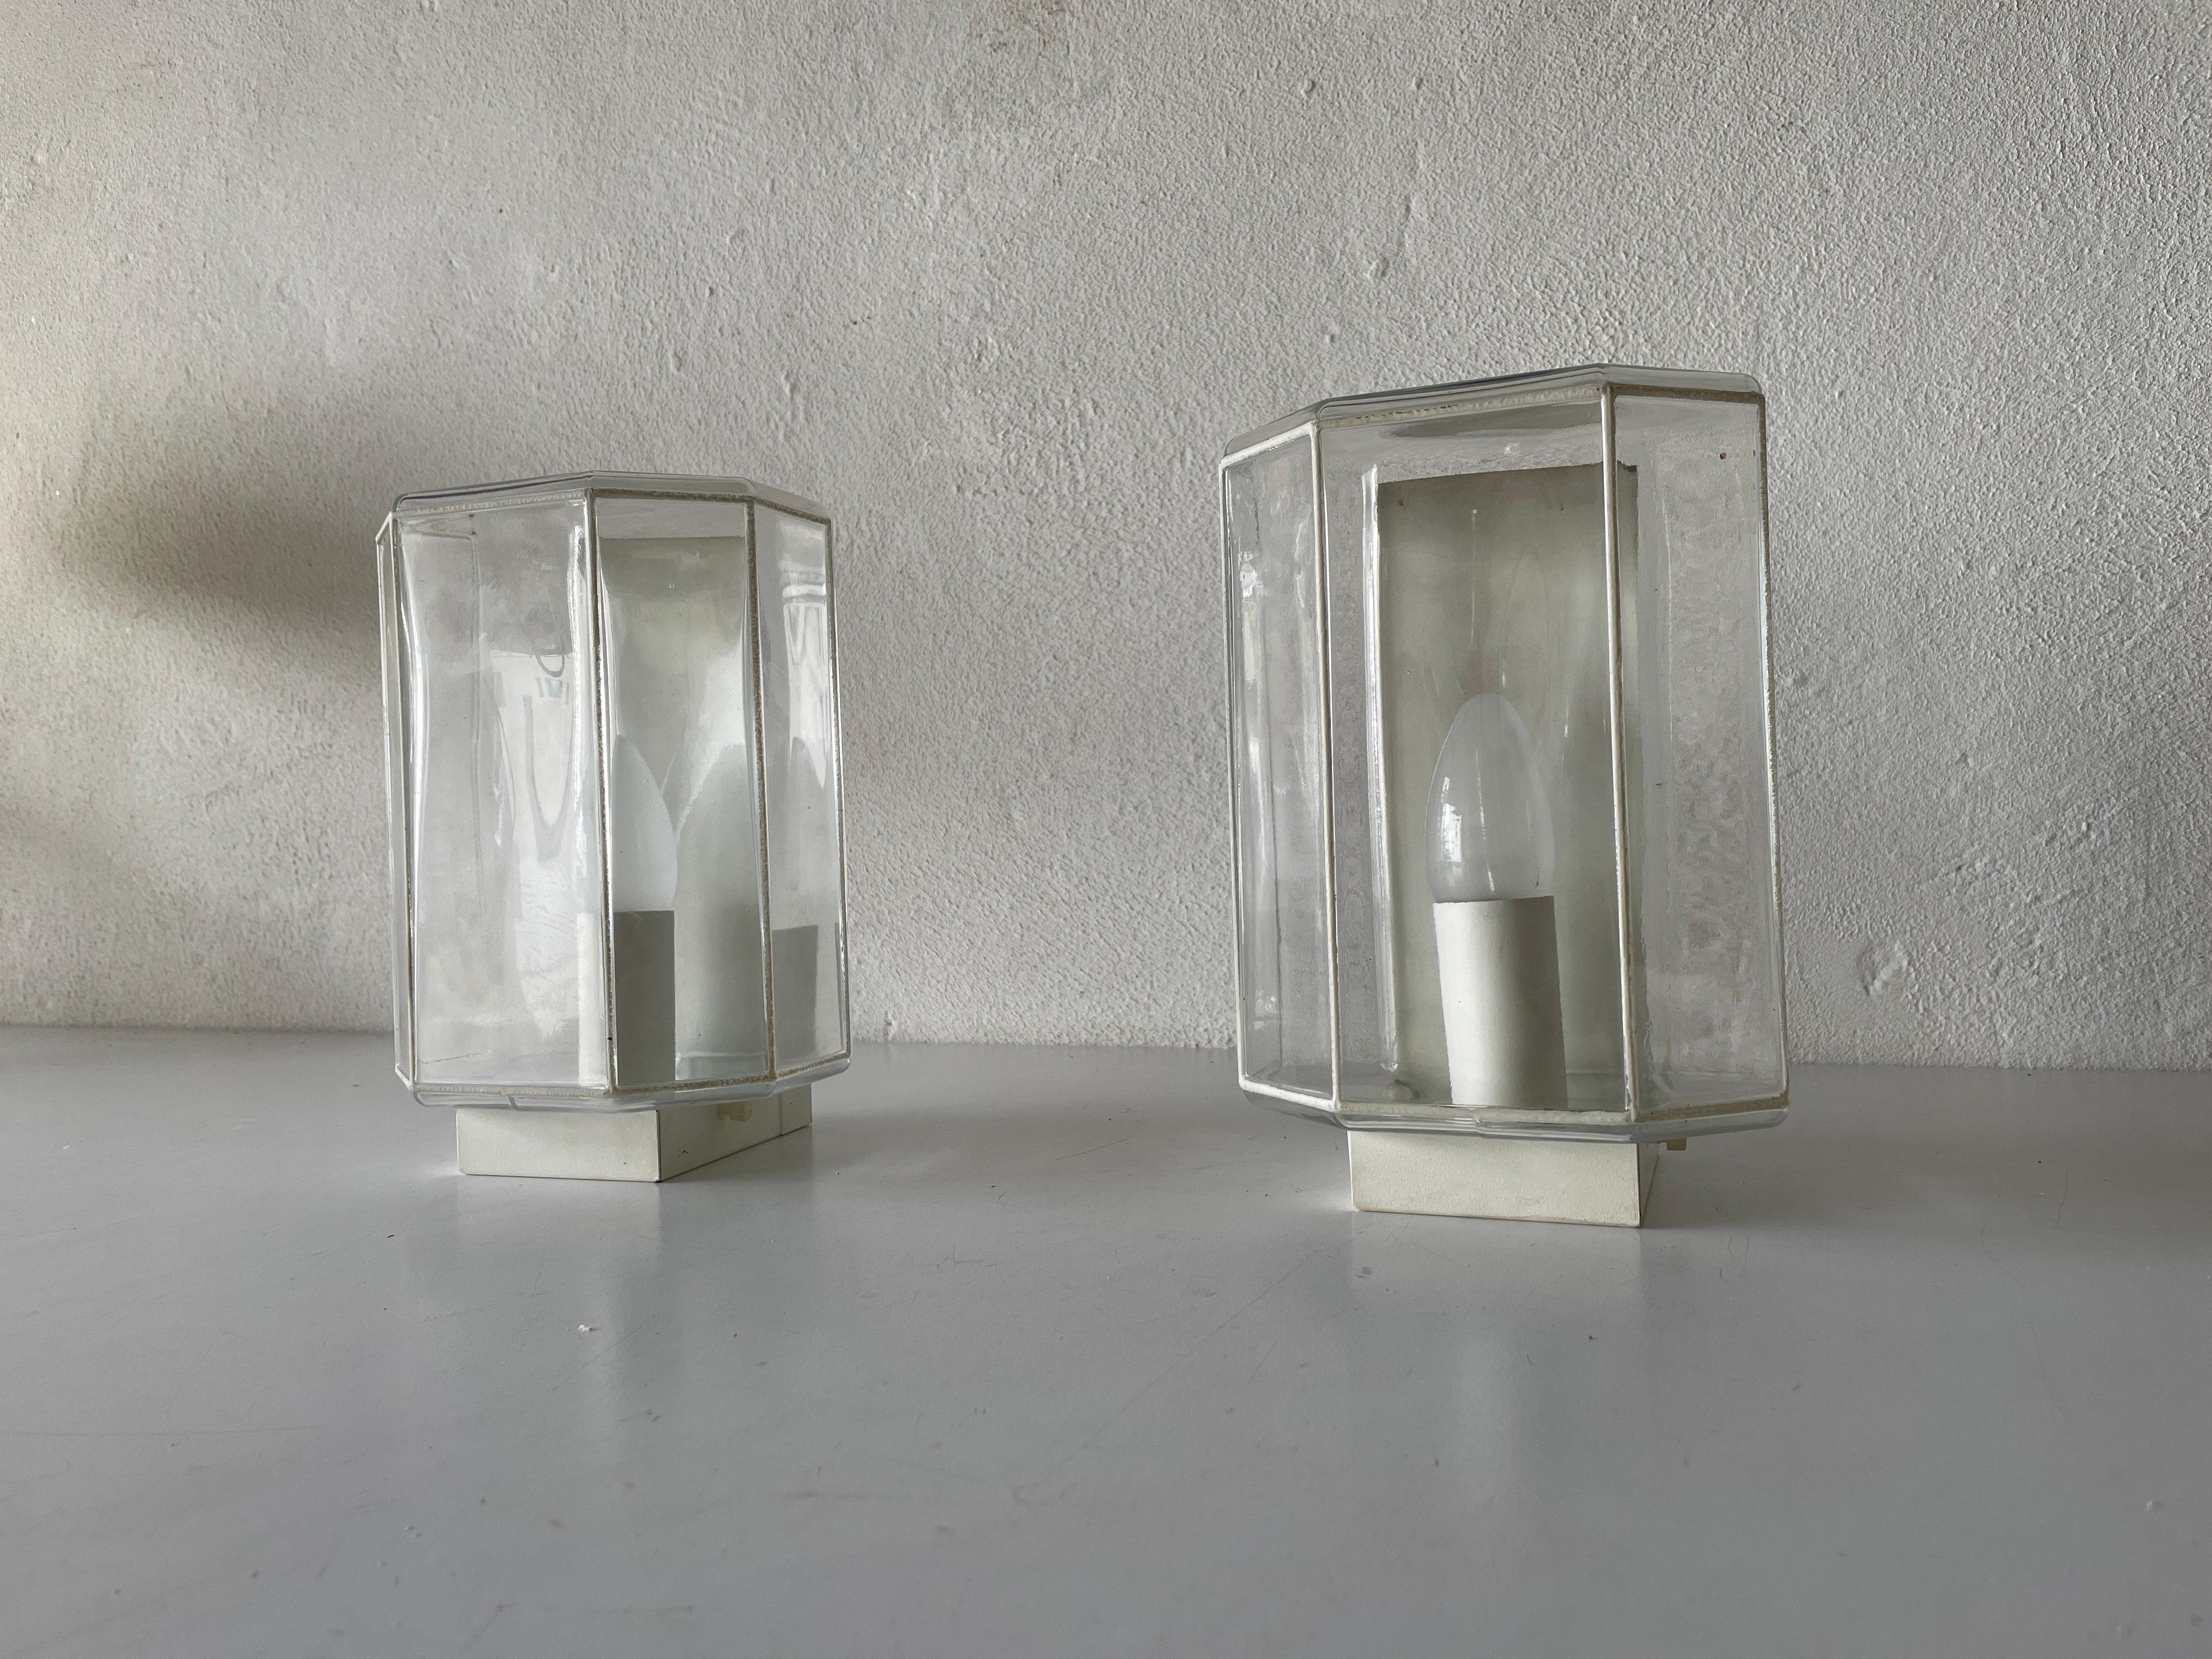 Paire d'appliques en verre structuré et fer blanc, années 1960, Limburg, Allemagne

Lampes murales très élégantes et au design minimal
La lampe est en très bon état.

Ces lampes fonctionnent avec des ampoules standard E14. 
Câblé et utilisable